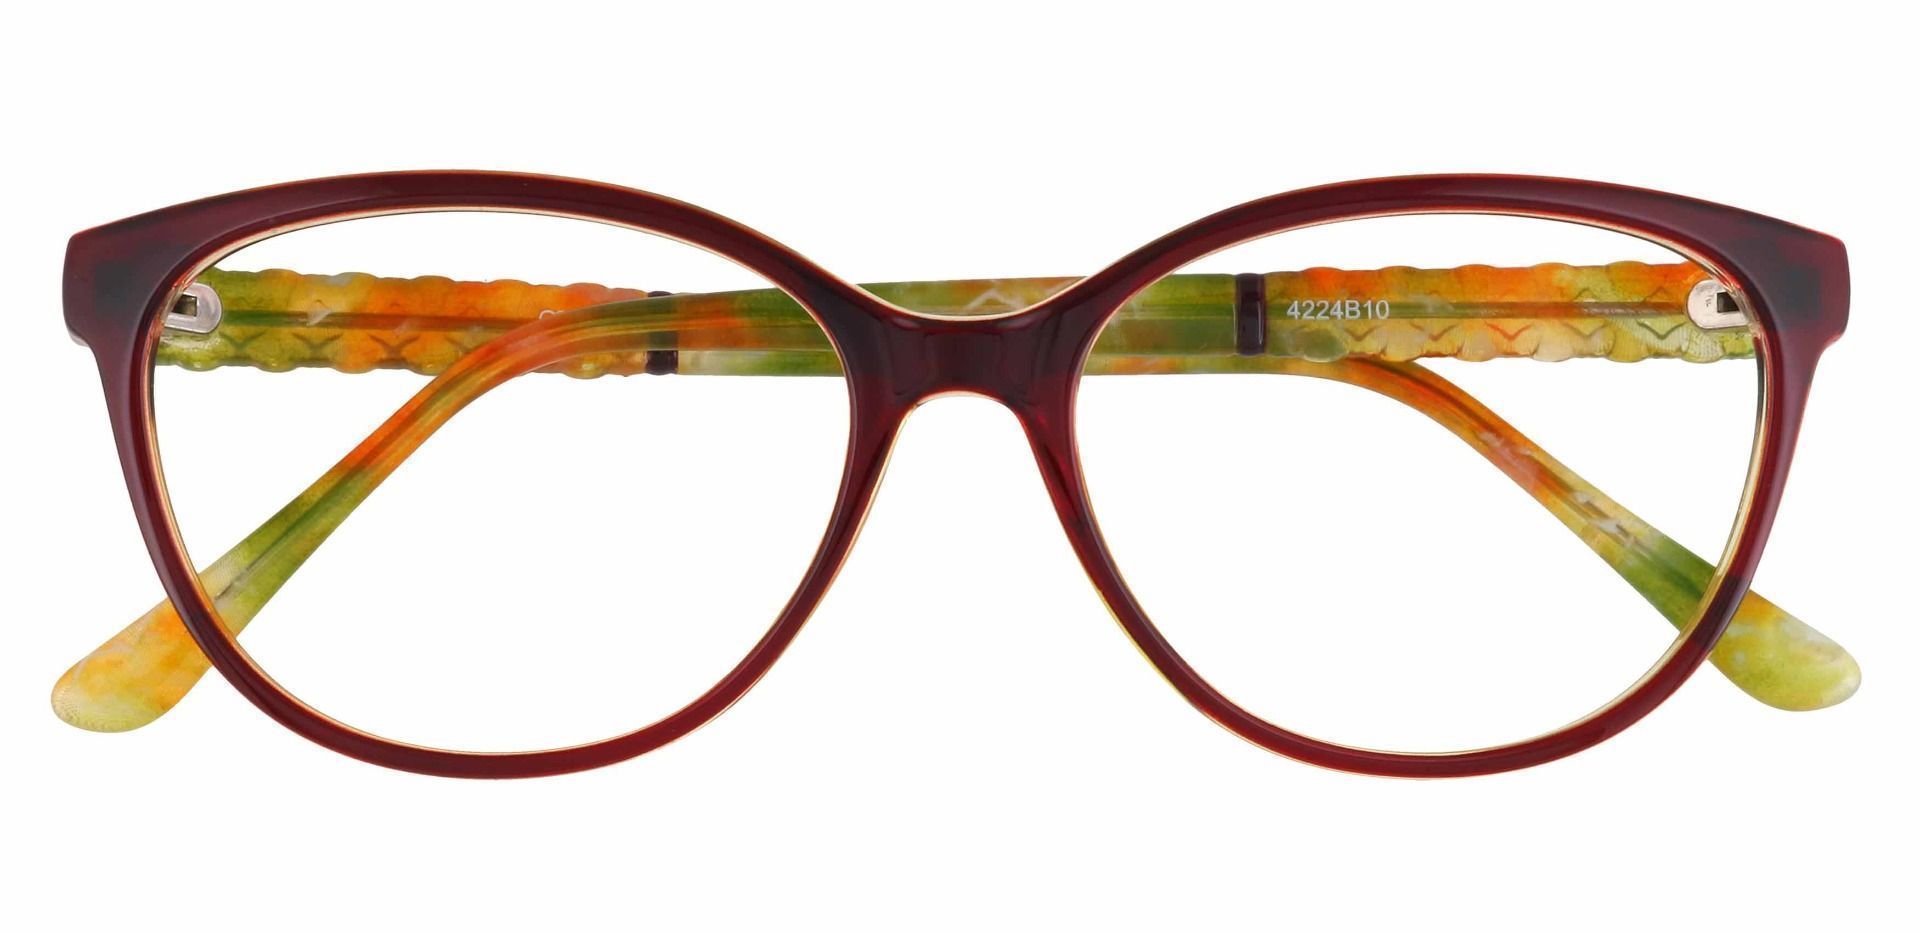 Wisteria Oval Prescription Glasses - Brown